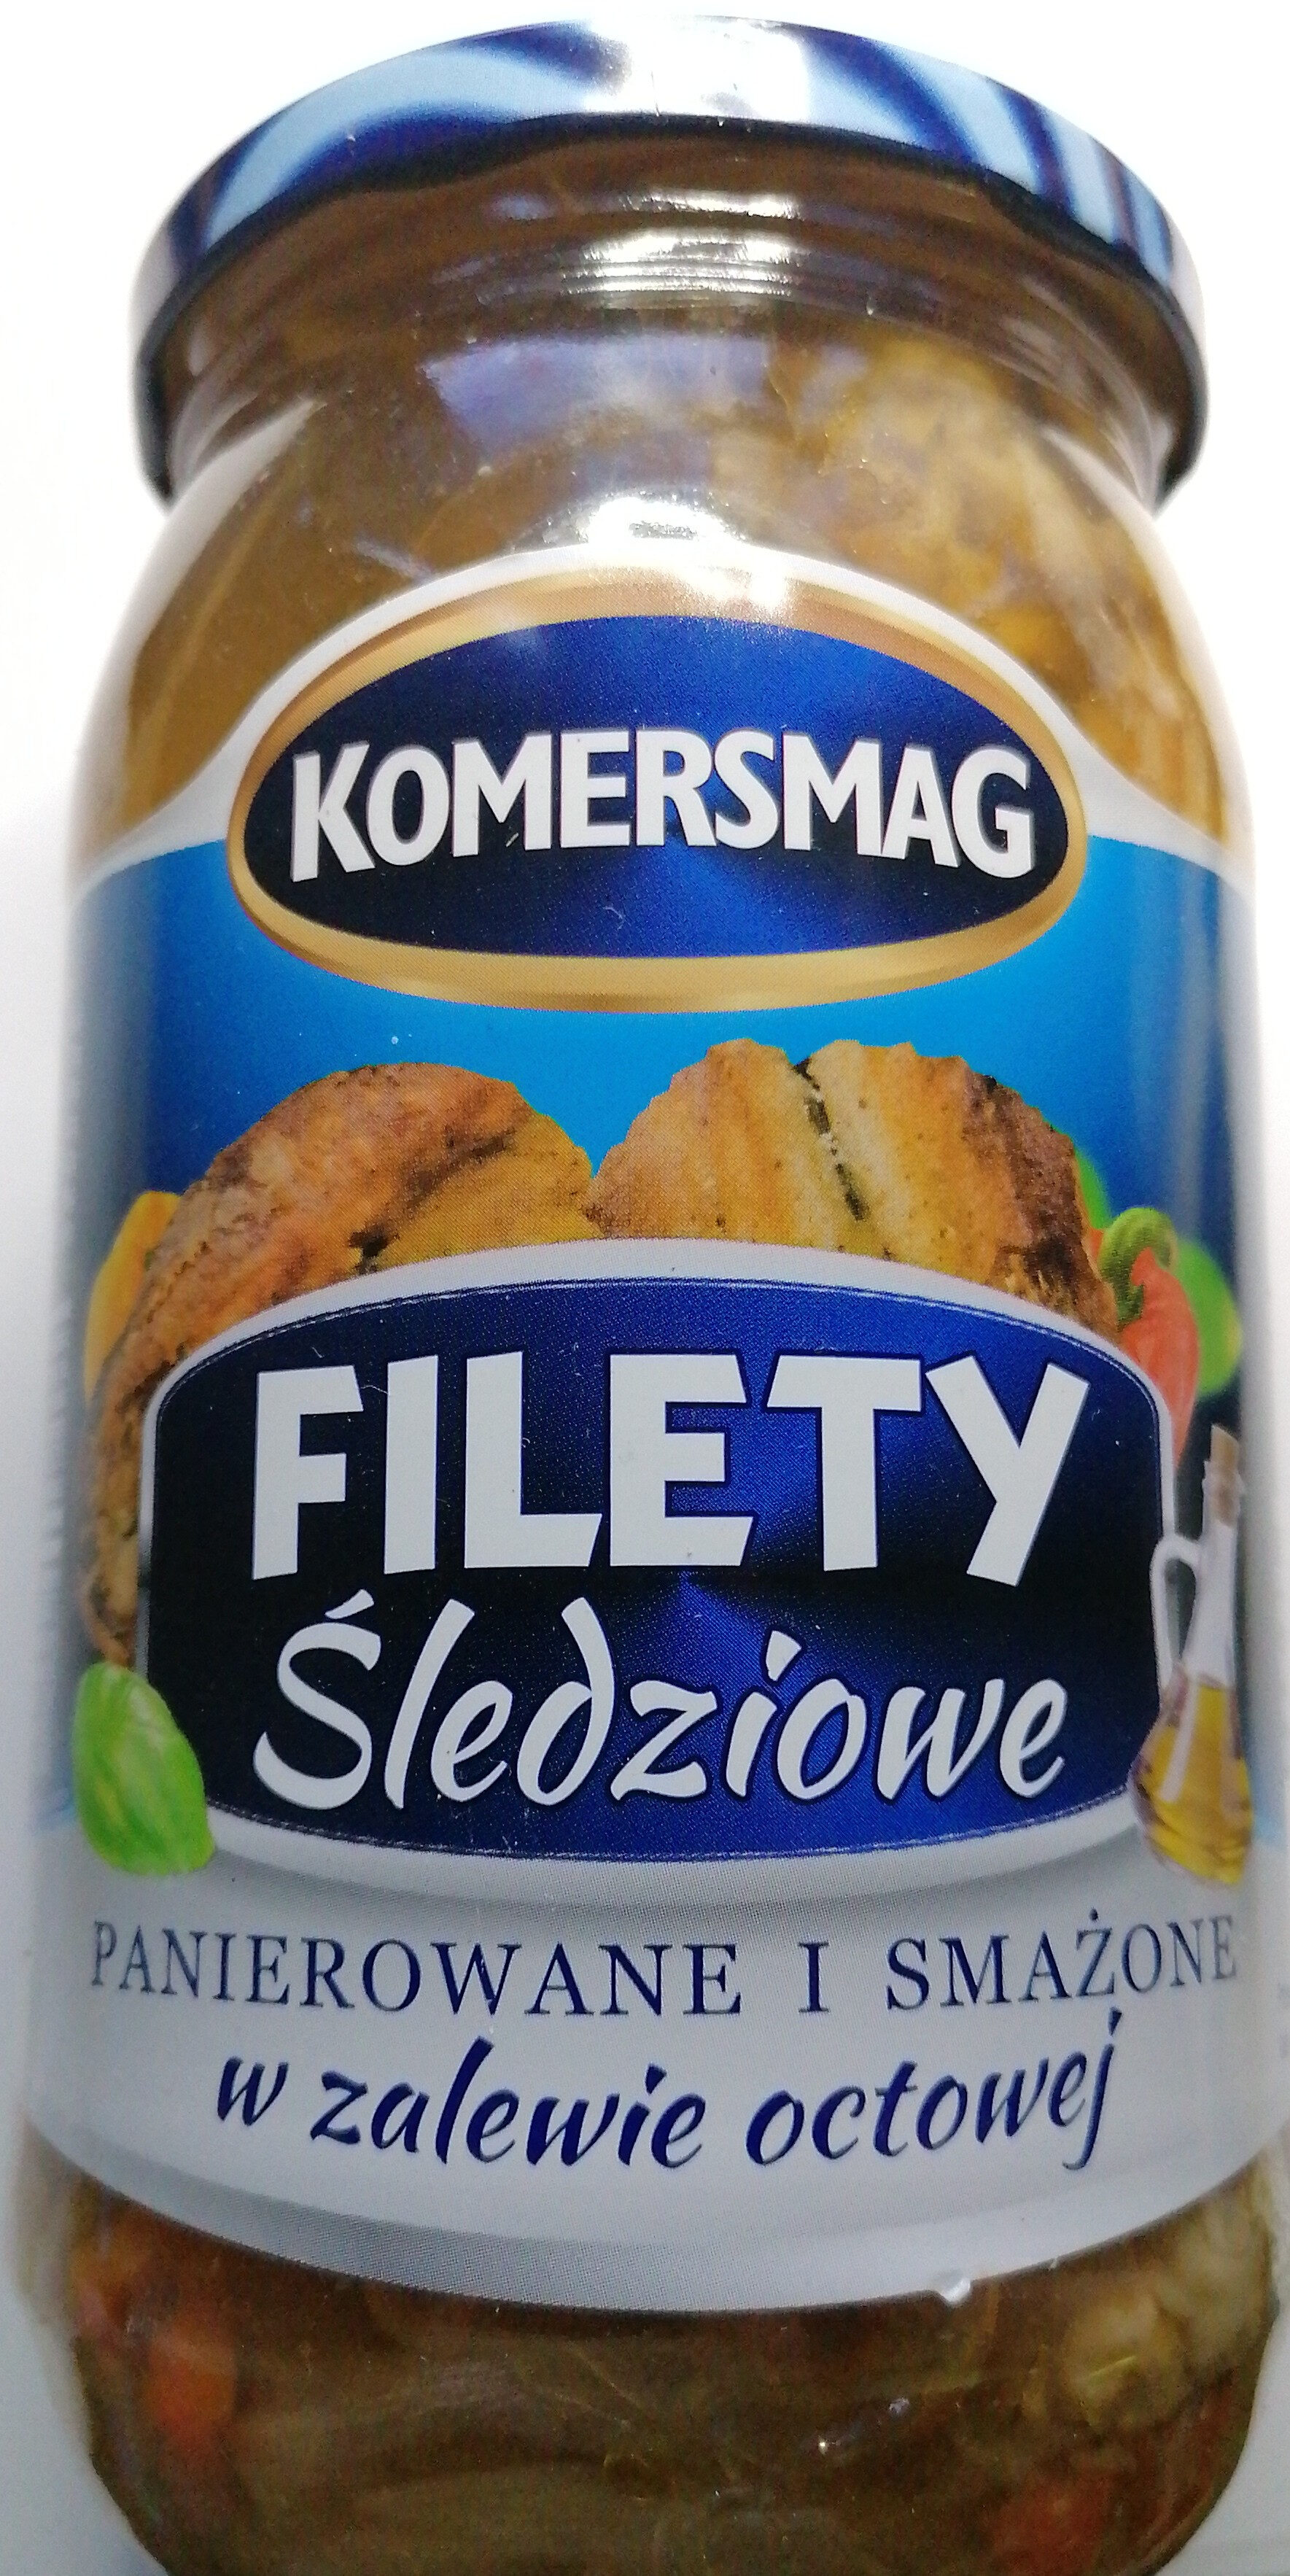 Filety śledziowe panierowane i smażone w zalewie octowej. - Product - pl